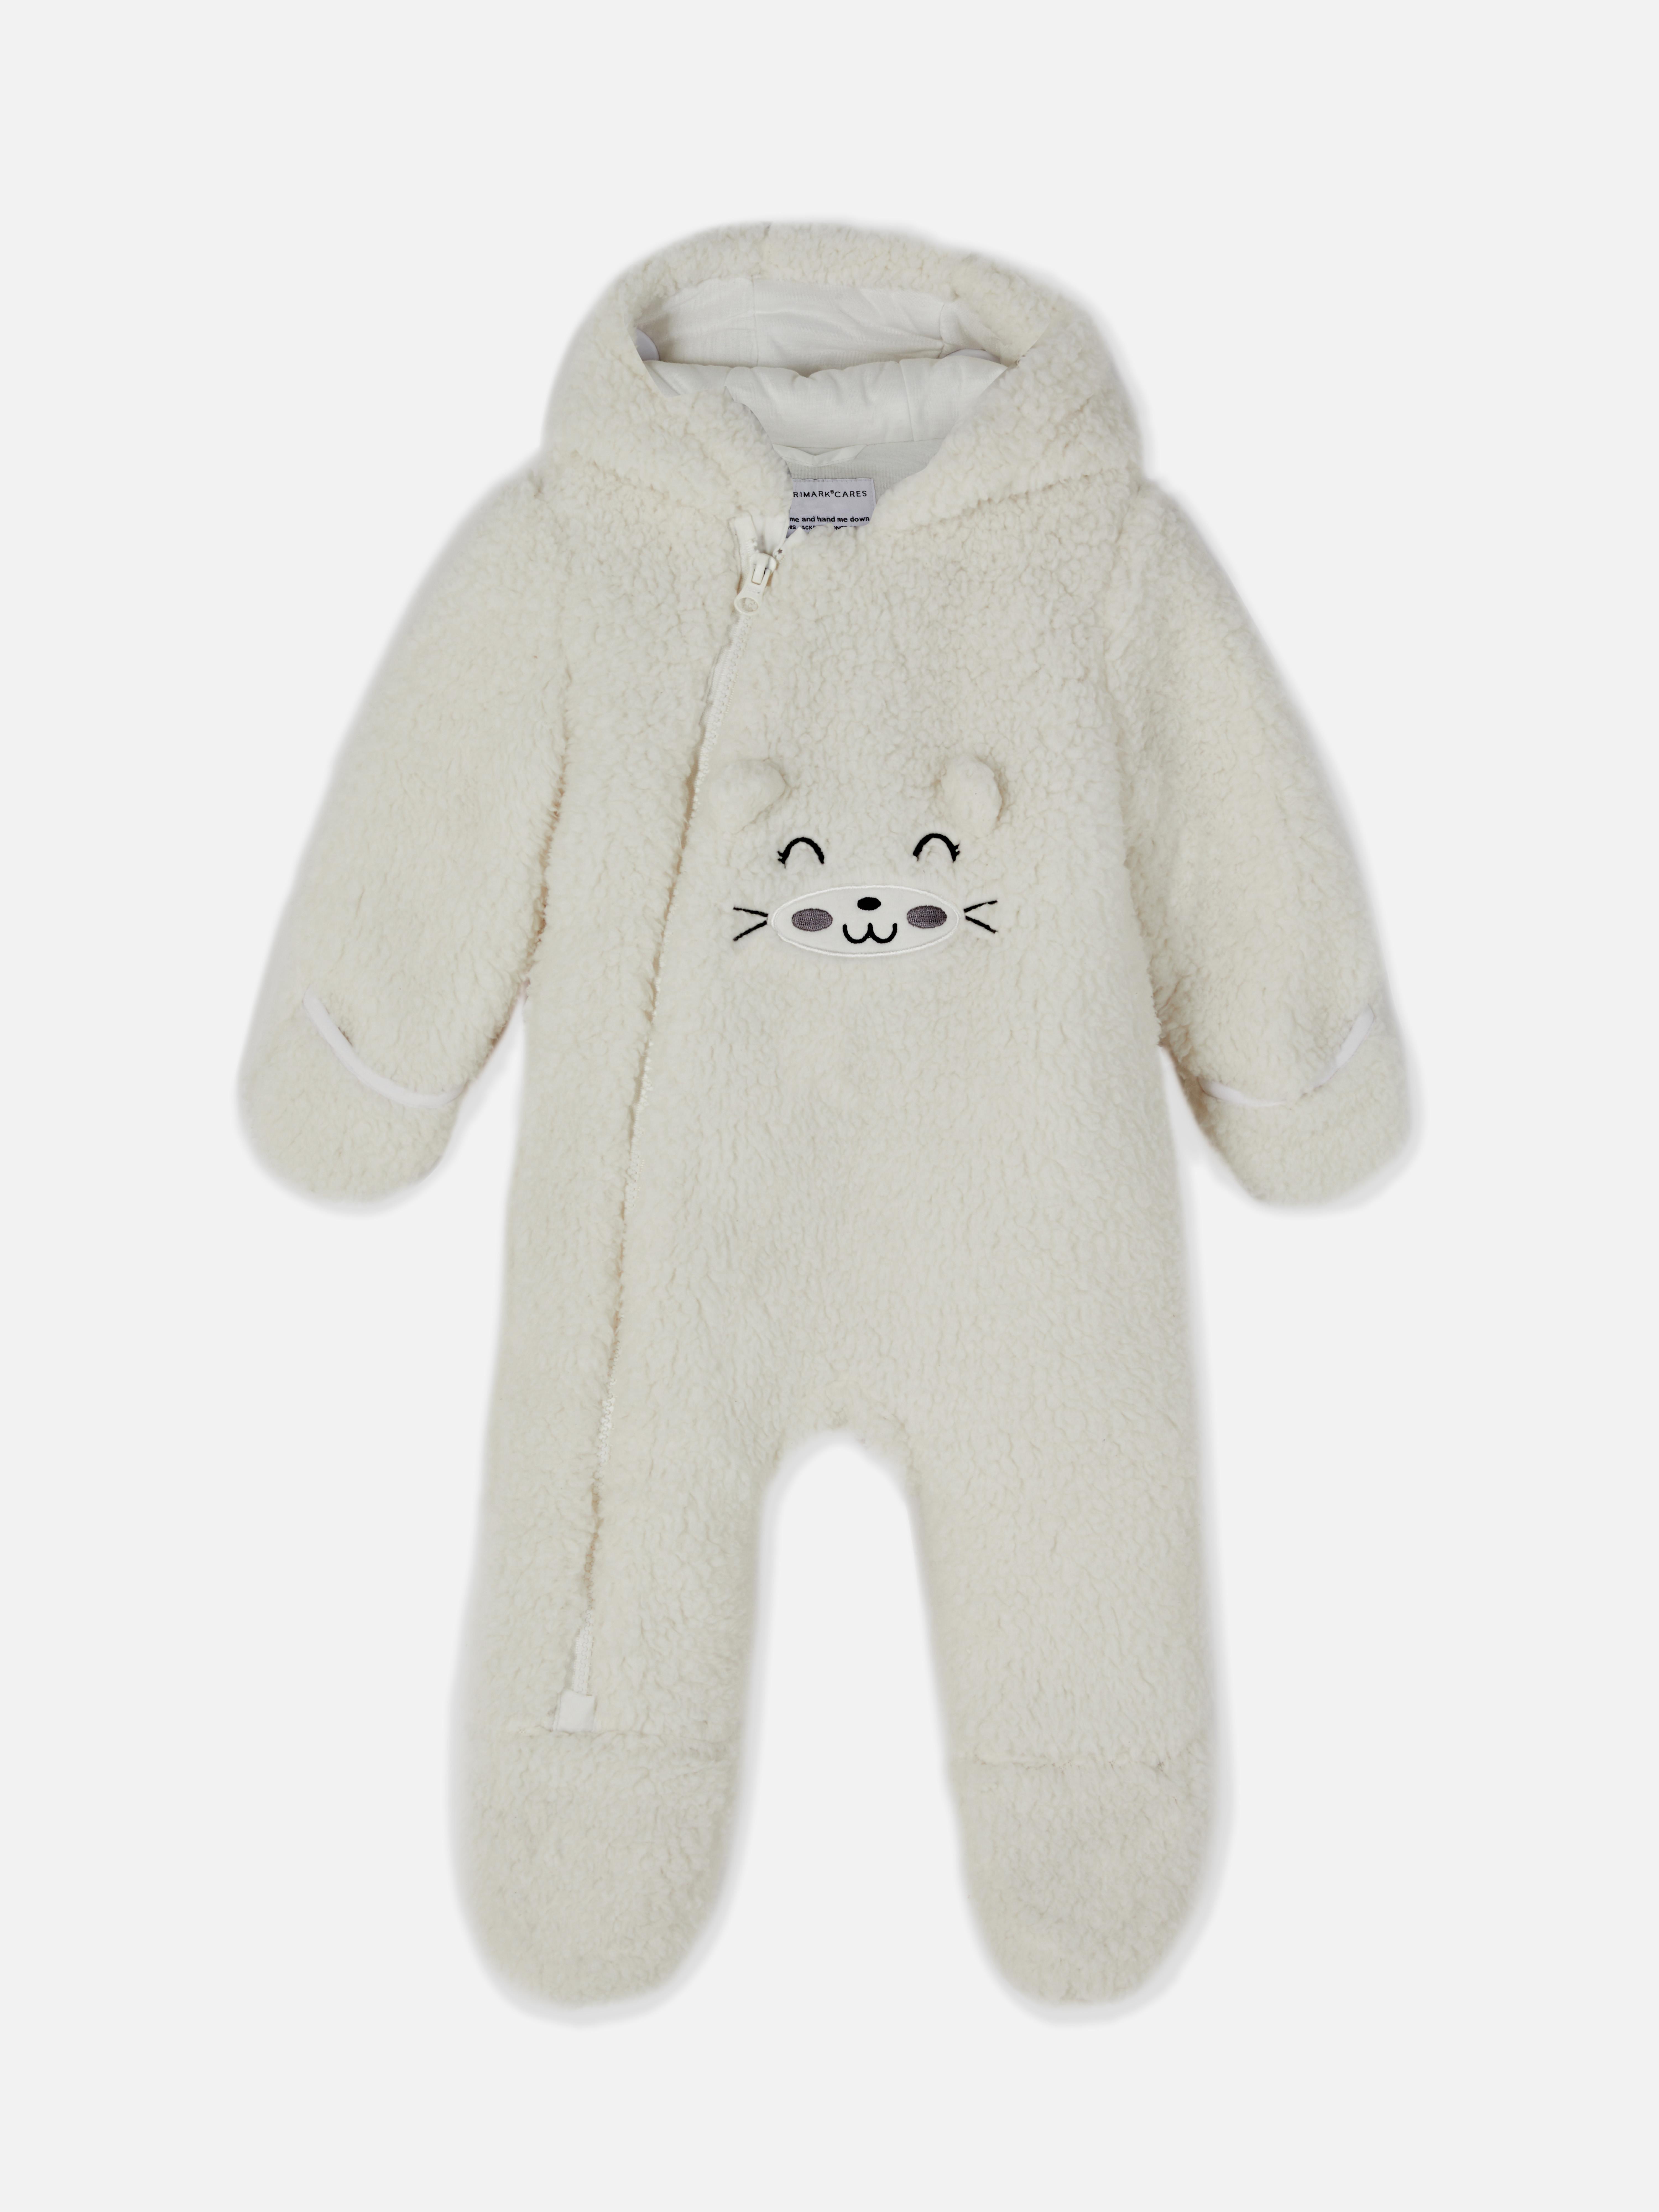 Zip-Up Fleece Snuggle Suit | Baby Clothing Essentials | Baby & Newborn ...